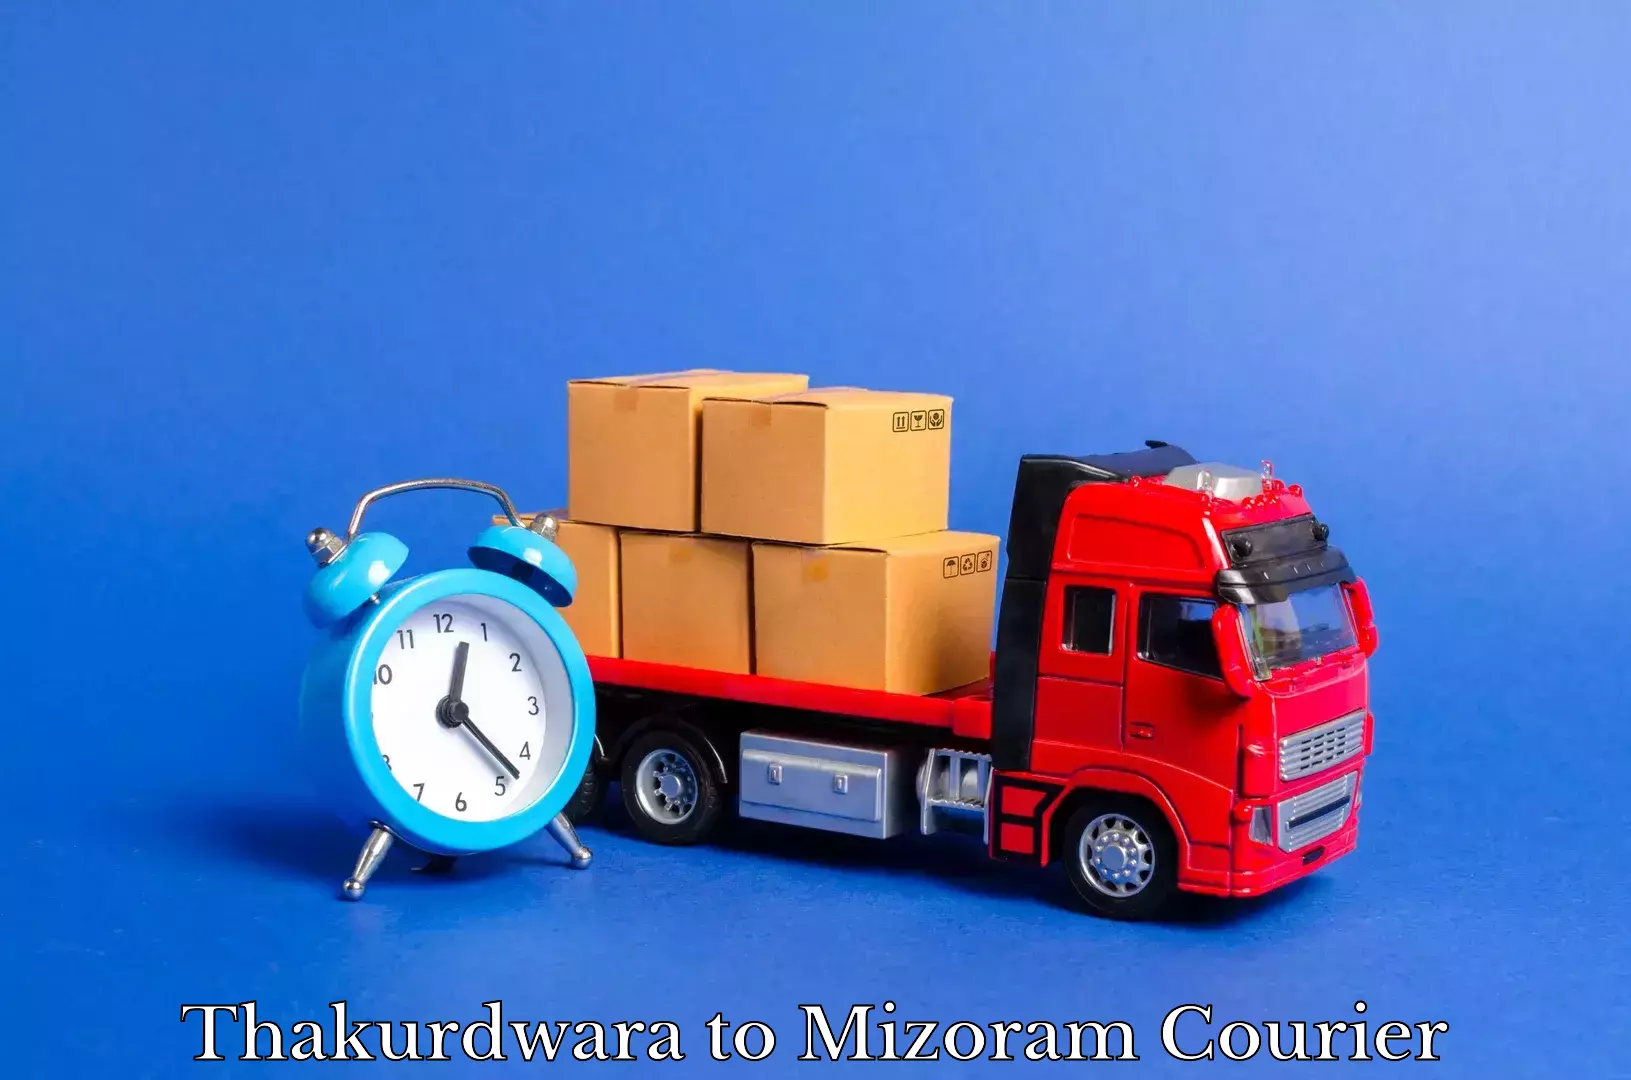 Professional movers Thakurdwara to Lawngtlai